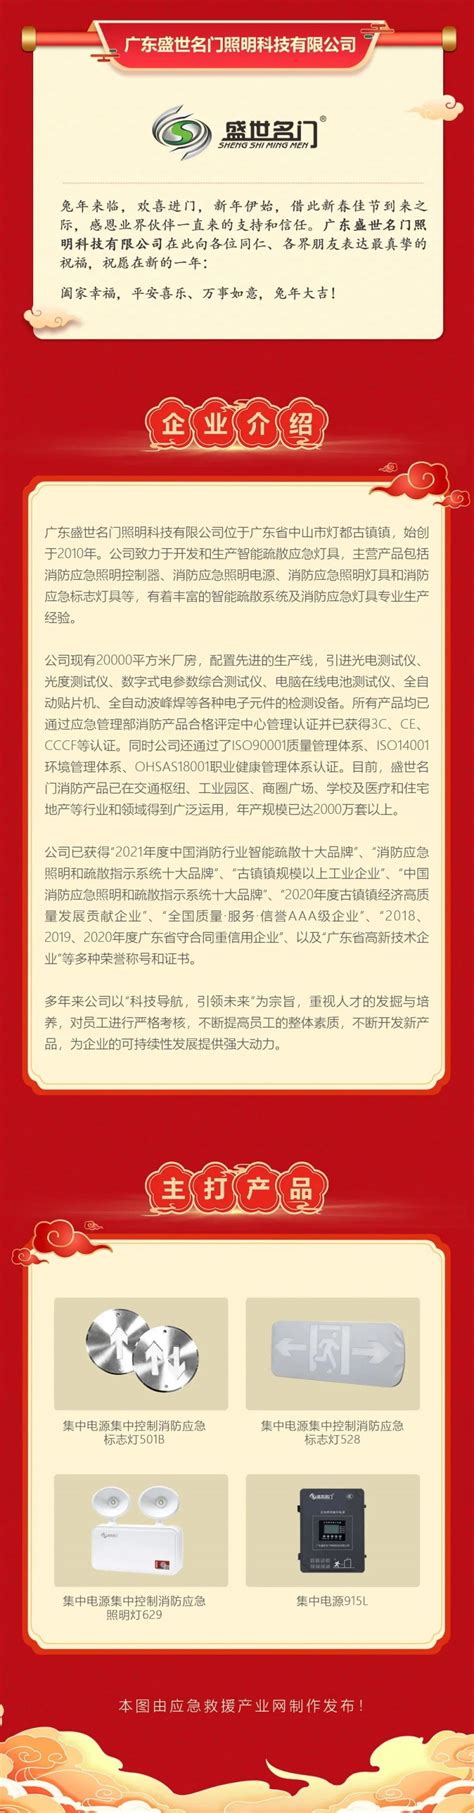 广东盛世名门照明科技有限公司-首页